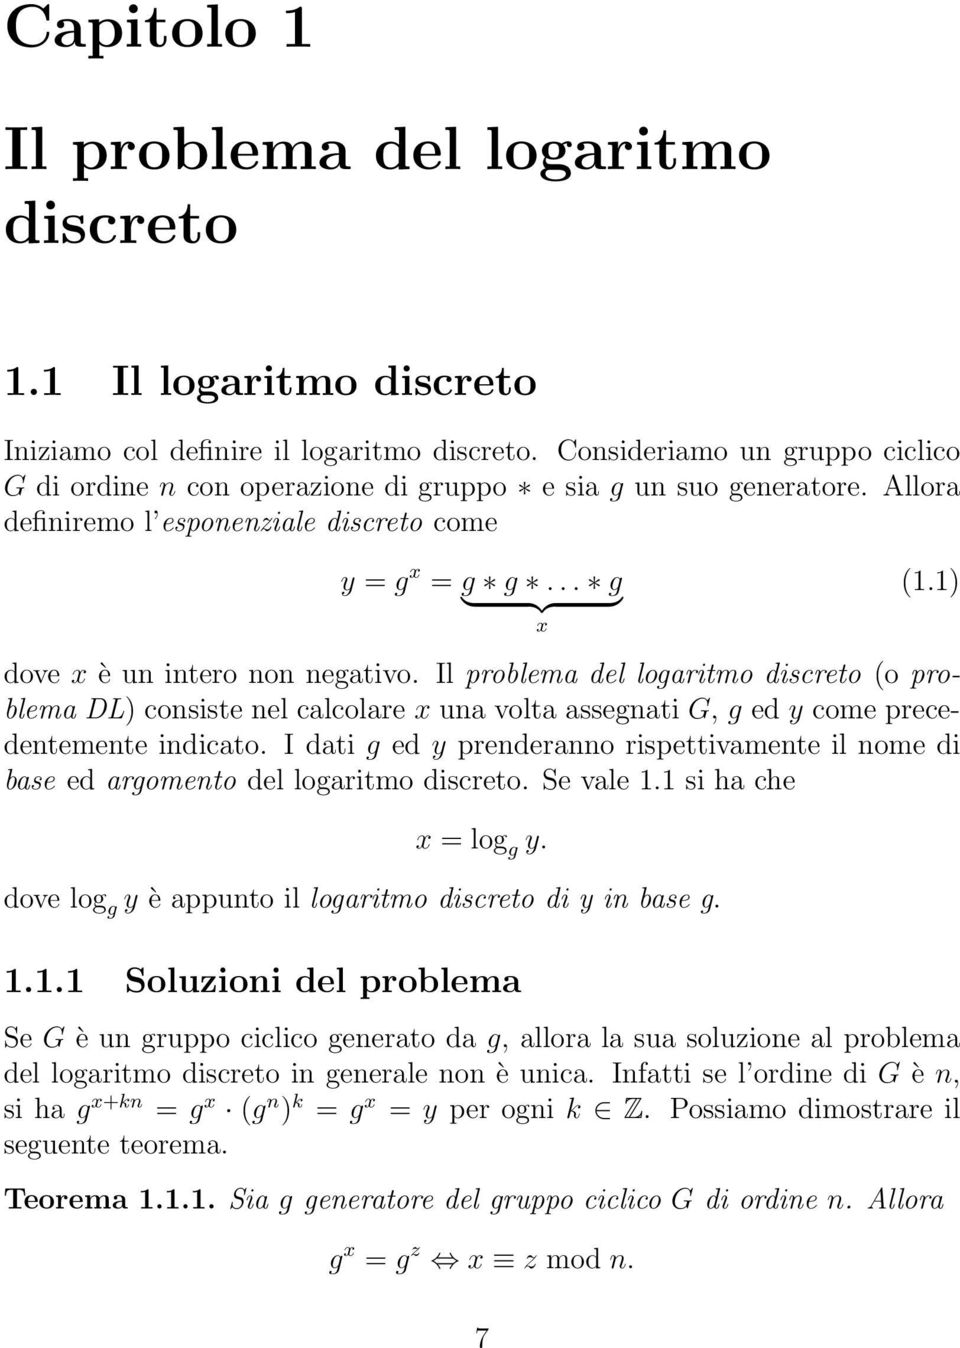 1) dove x è un intero non negativo. Il problema del logaritmo discreto (o problema DL) consiste nel calcolare x una volta assegnati G, g ed y come precedentemente indicato.